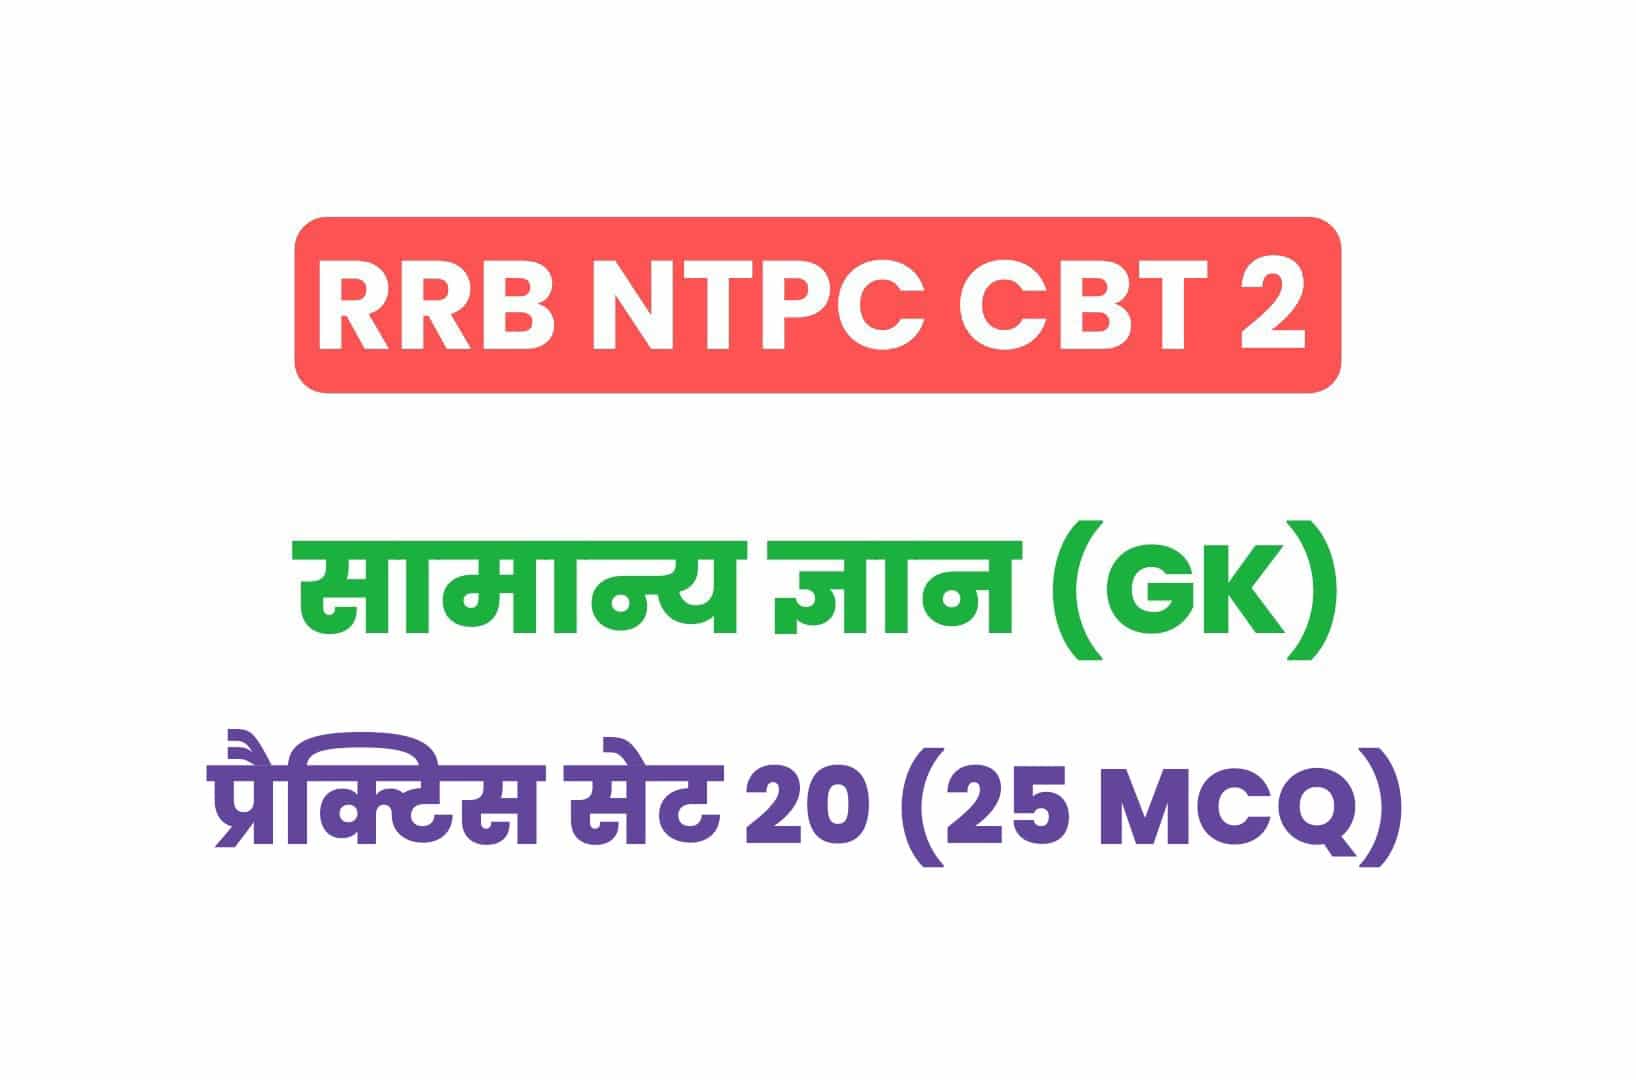 RRB NTPC CBT 2 GK प्रैक्टिस सेट 20: सामान्य ज्ञान के महत्वपूर्ण प्रश्नों का संग्रह, जरूर देखें